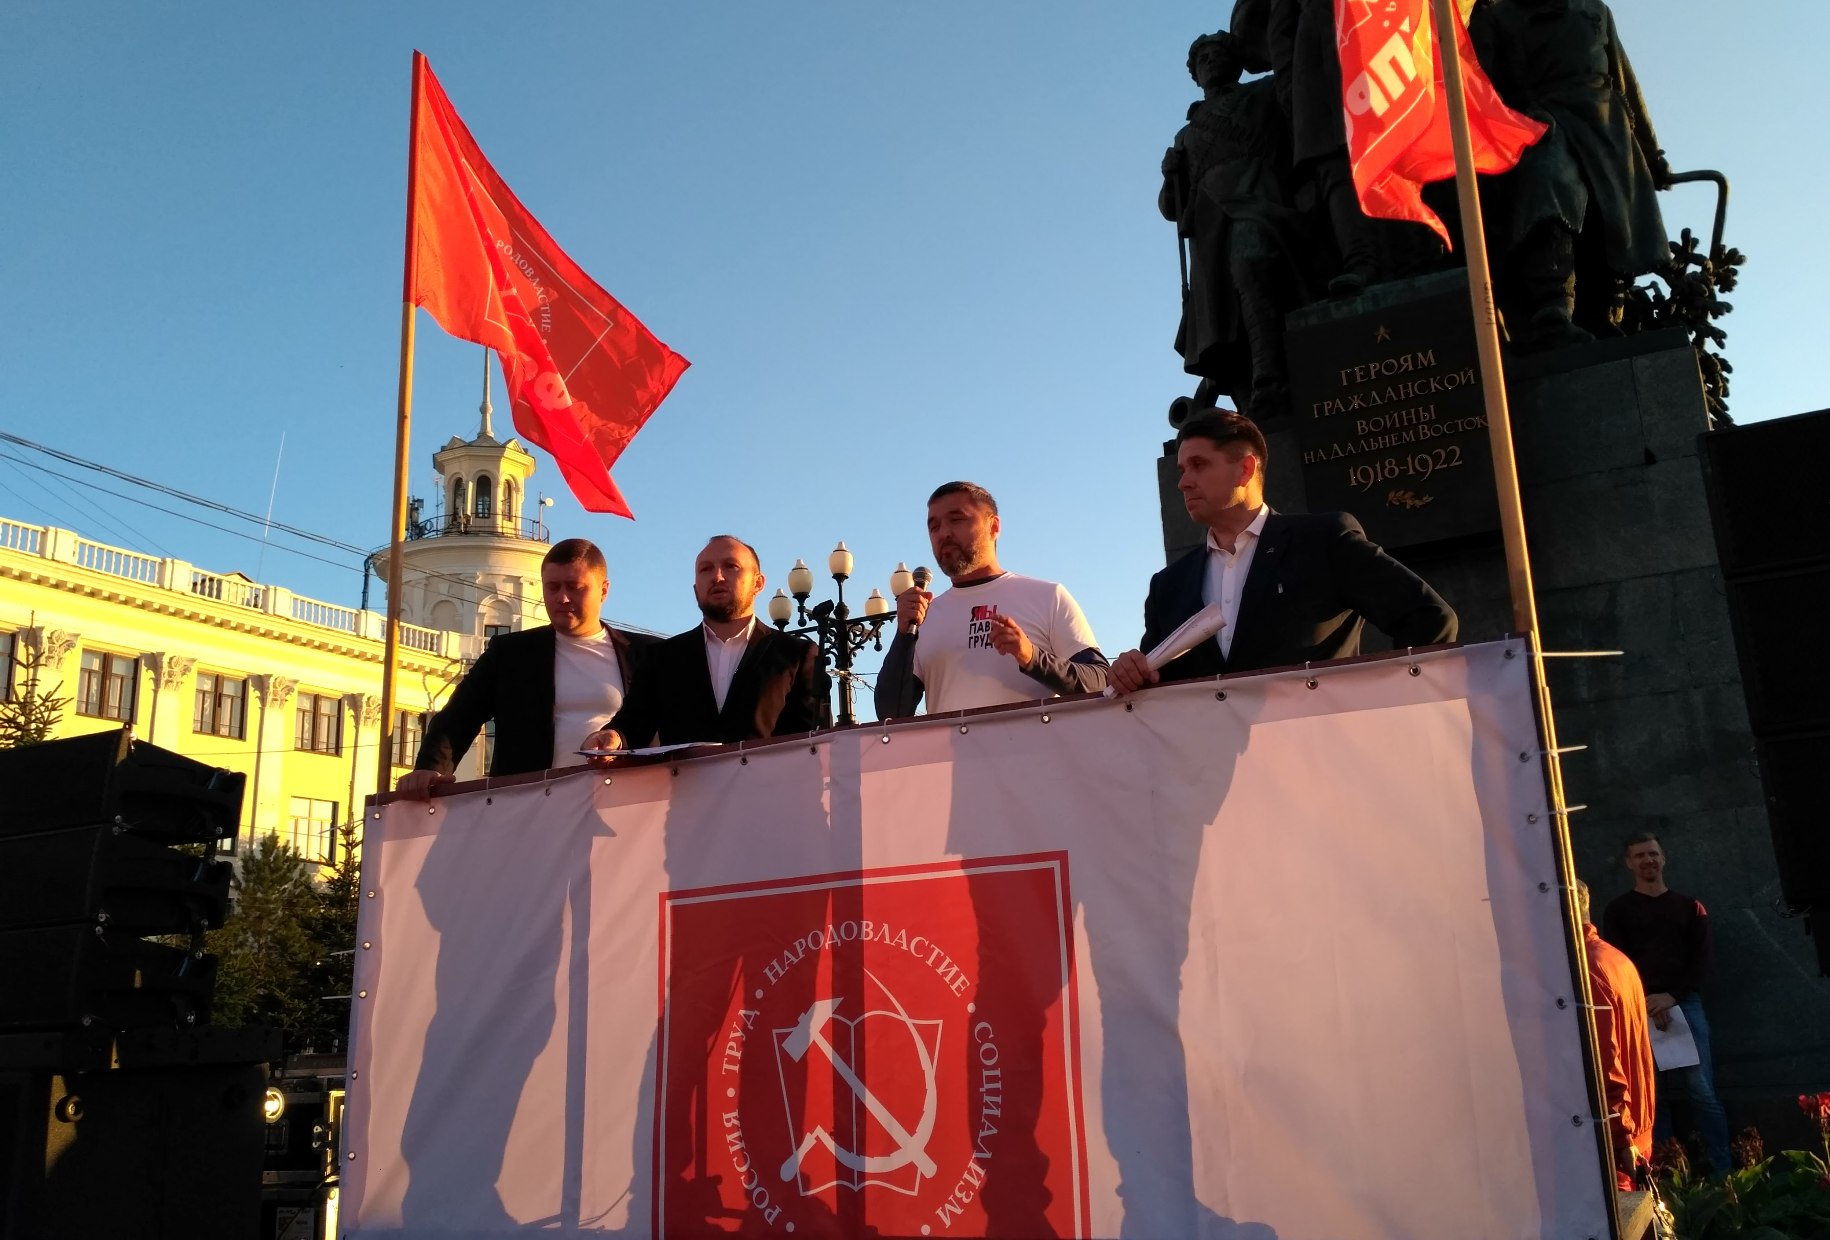 акции протеста в хабаровске